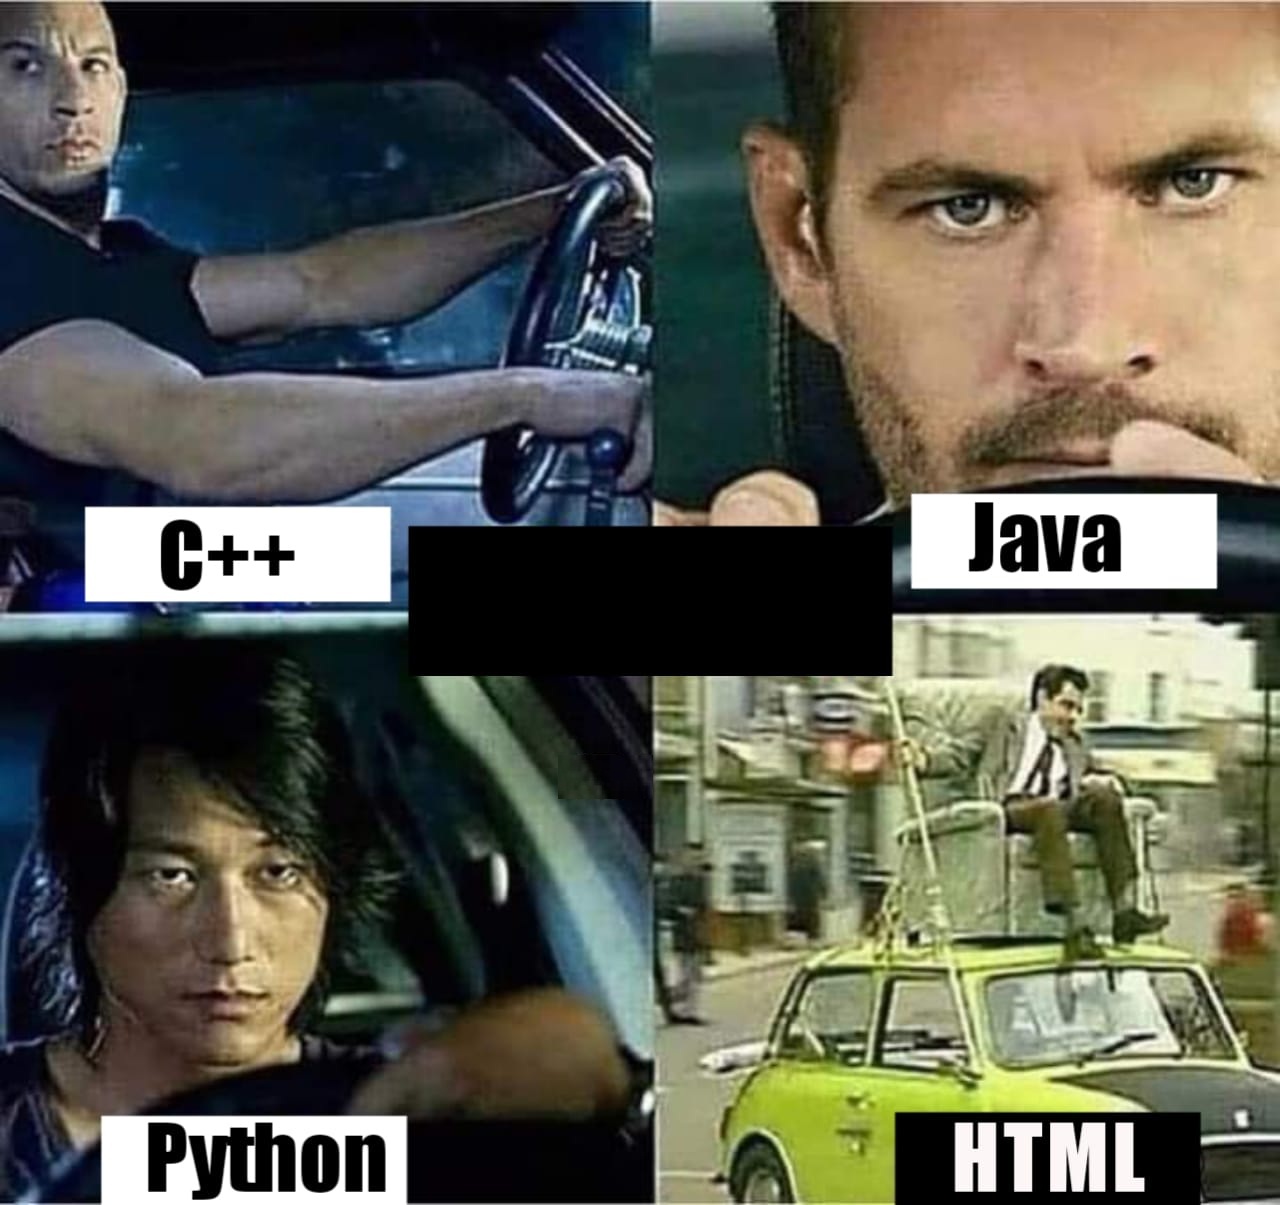 But still we love HTML